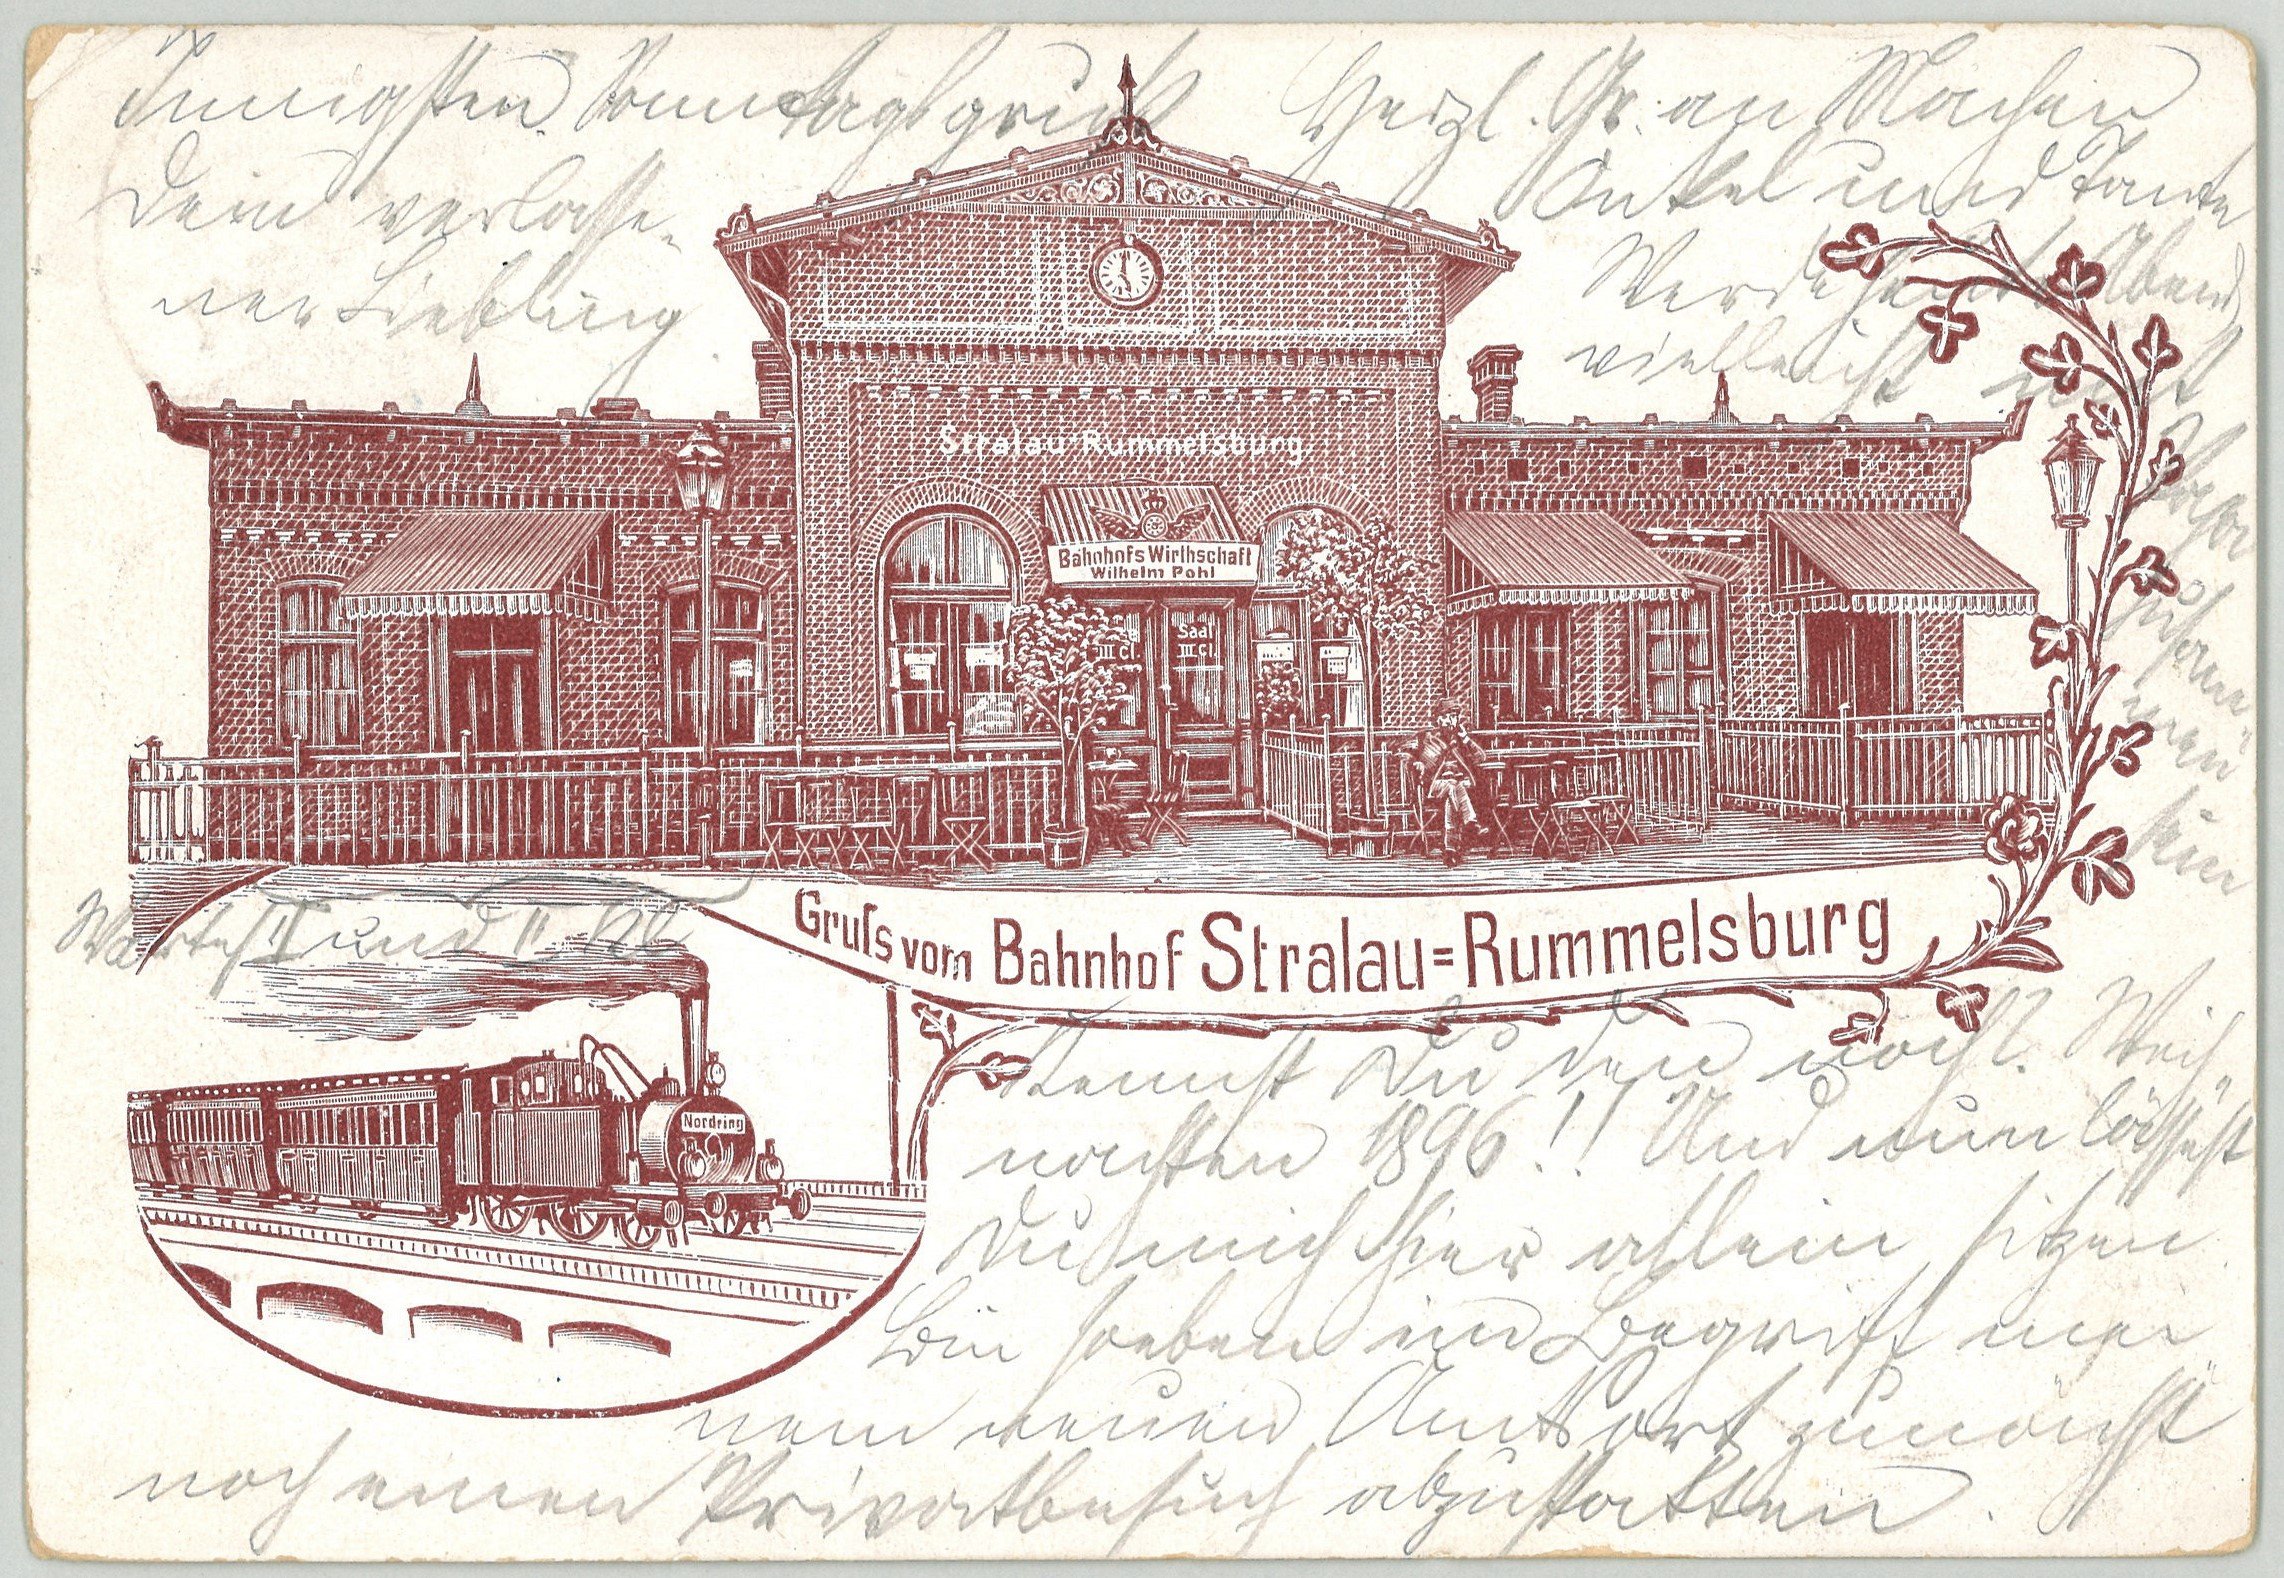 Berlin-Friedrichshain: Bahnhof Stralau-Rummelsburg (Landesgeschichtliche Vereinigung für die Mark Brandenburg e.V., Archiv CC BY)